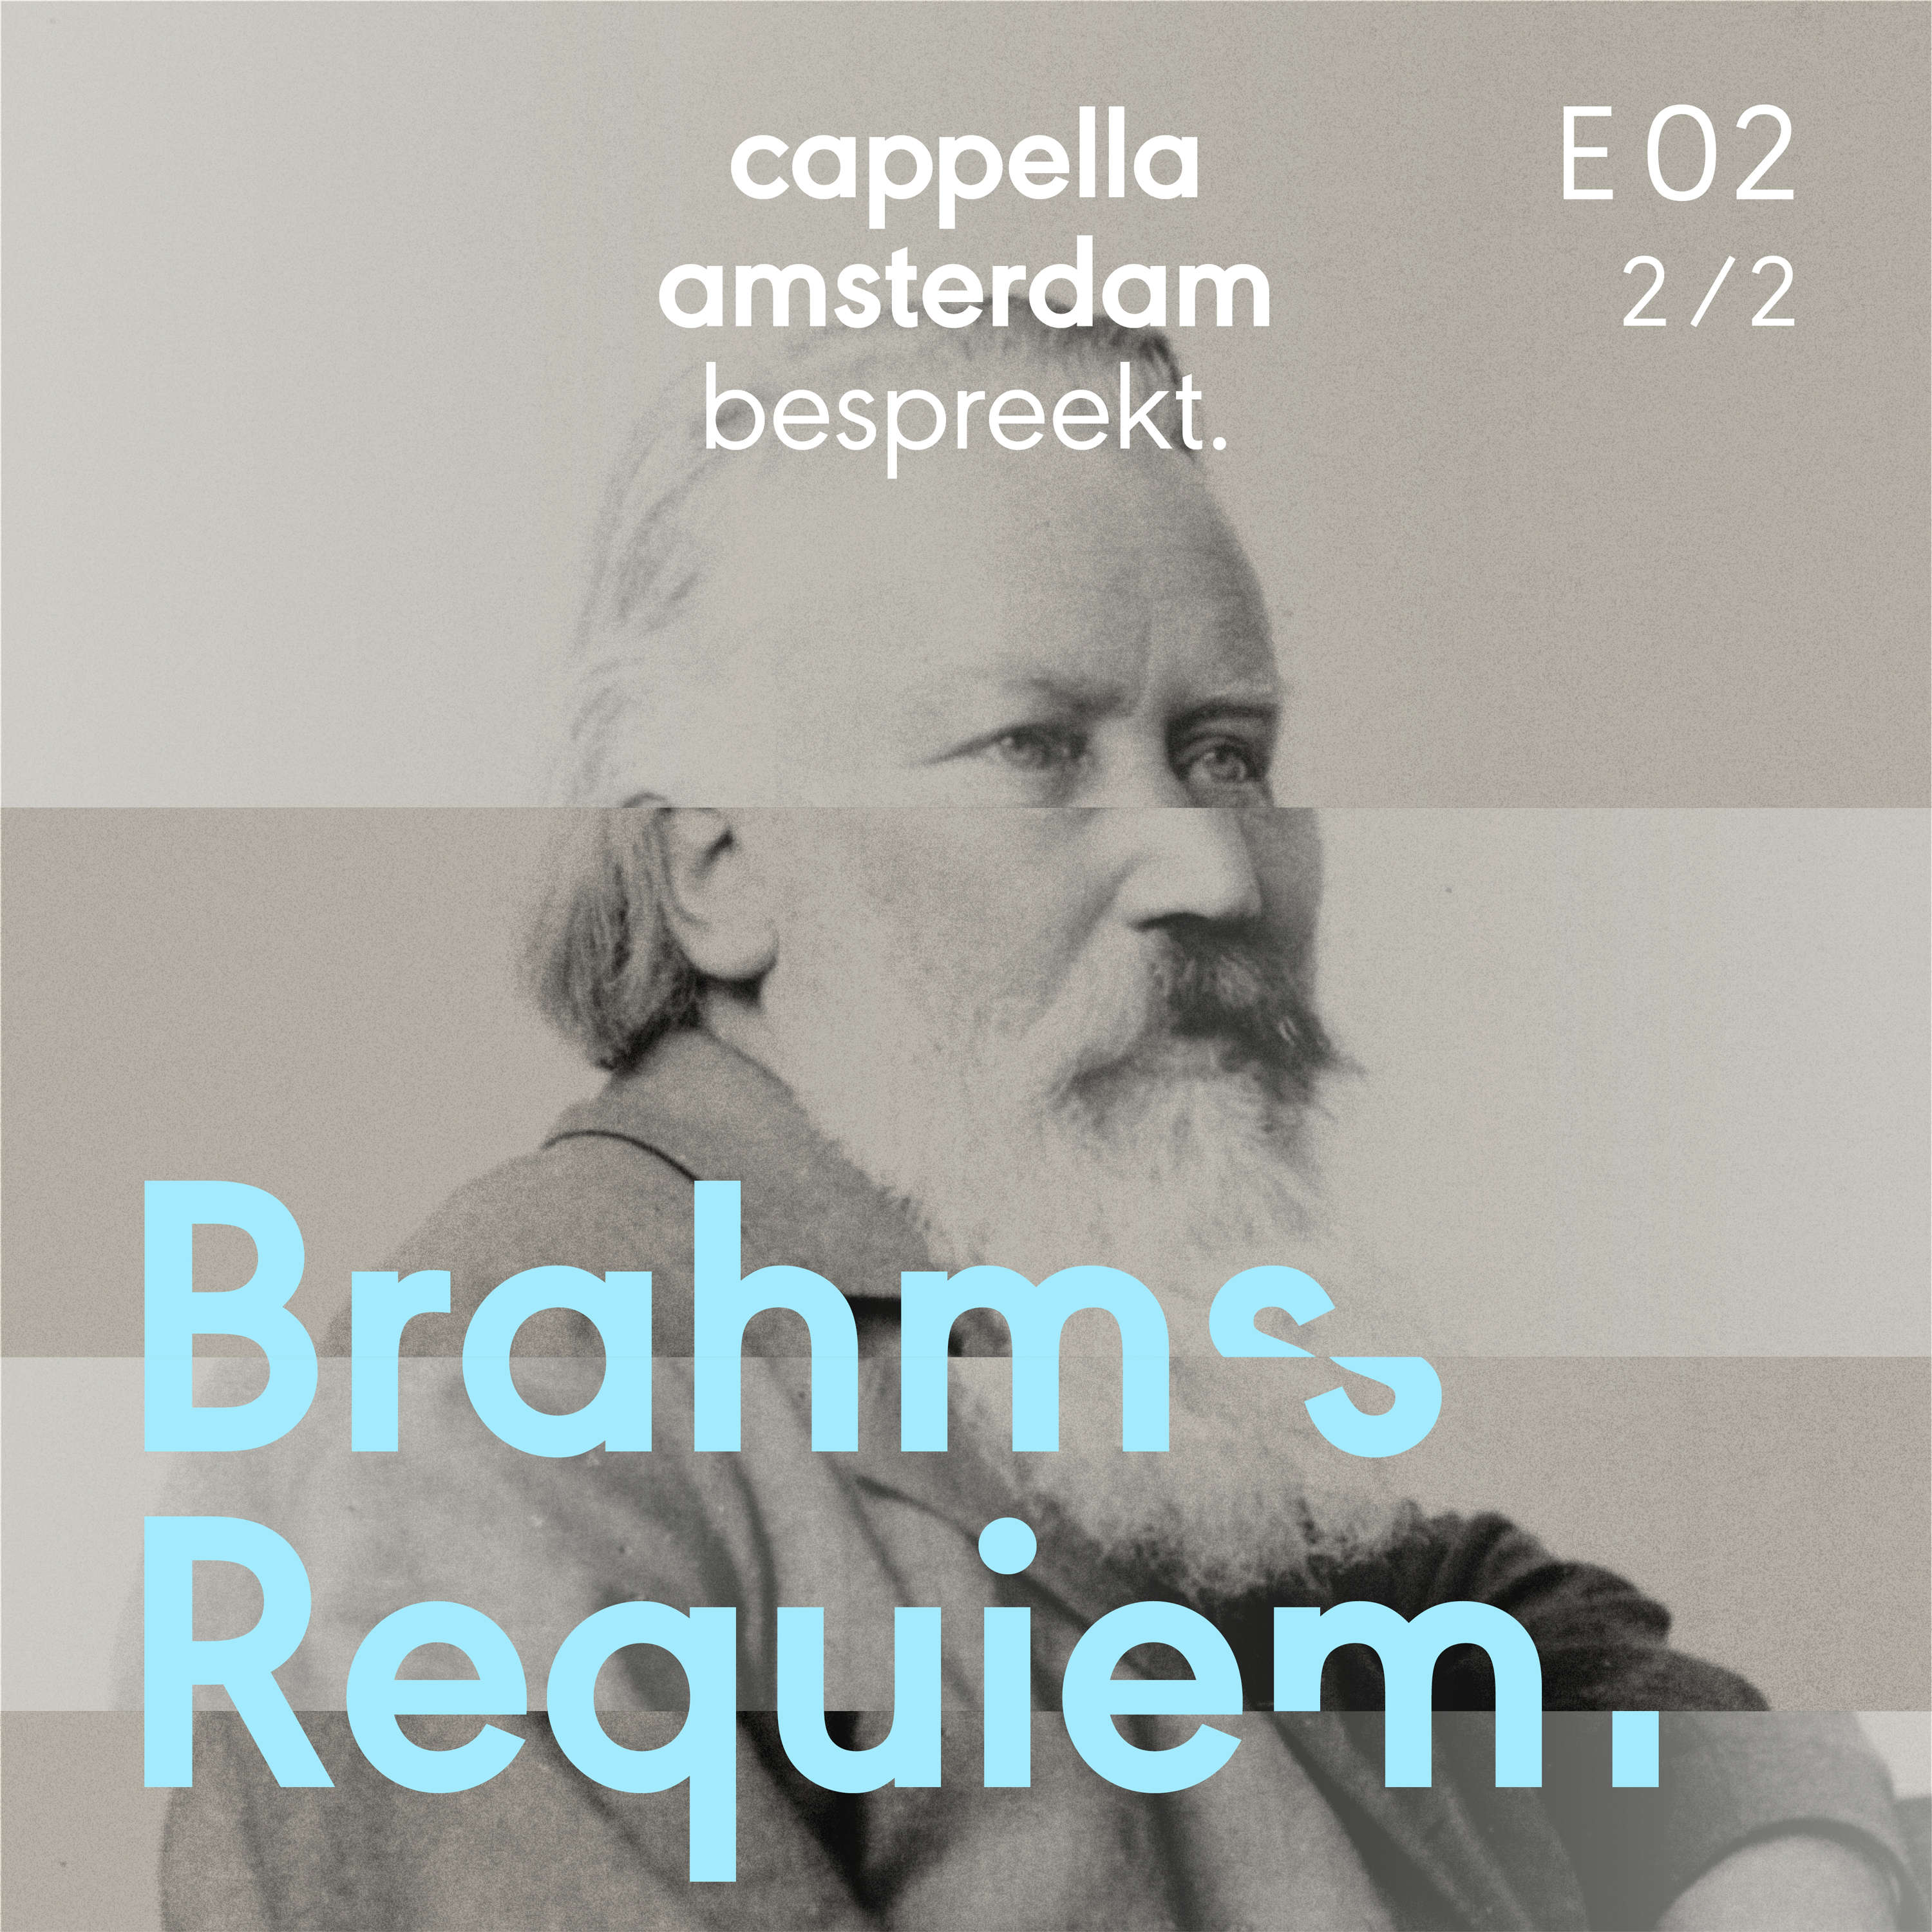 Brahms Ein deutsches Requiem Ep. 2